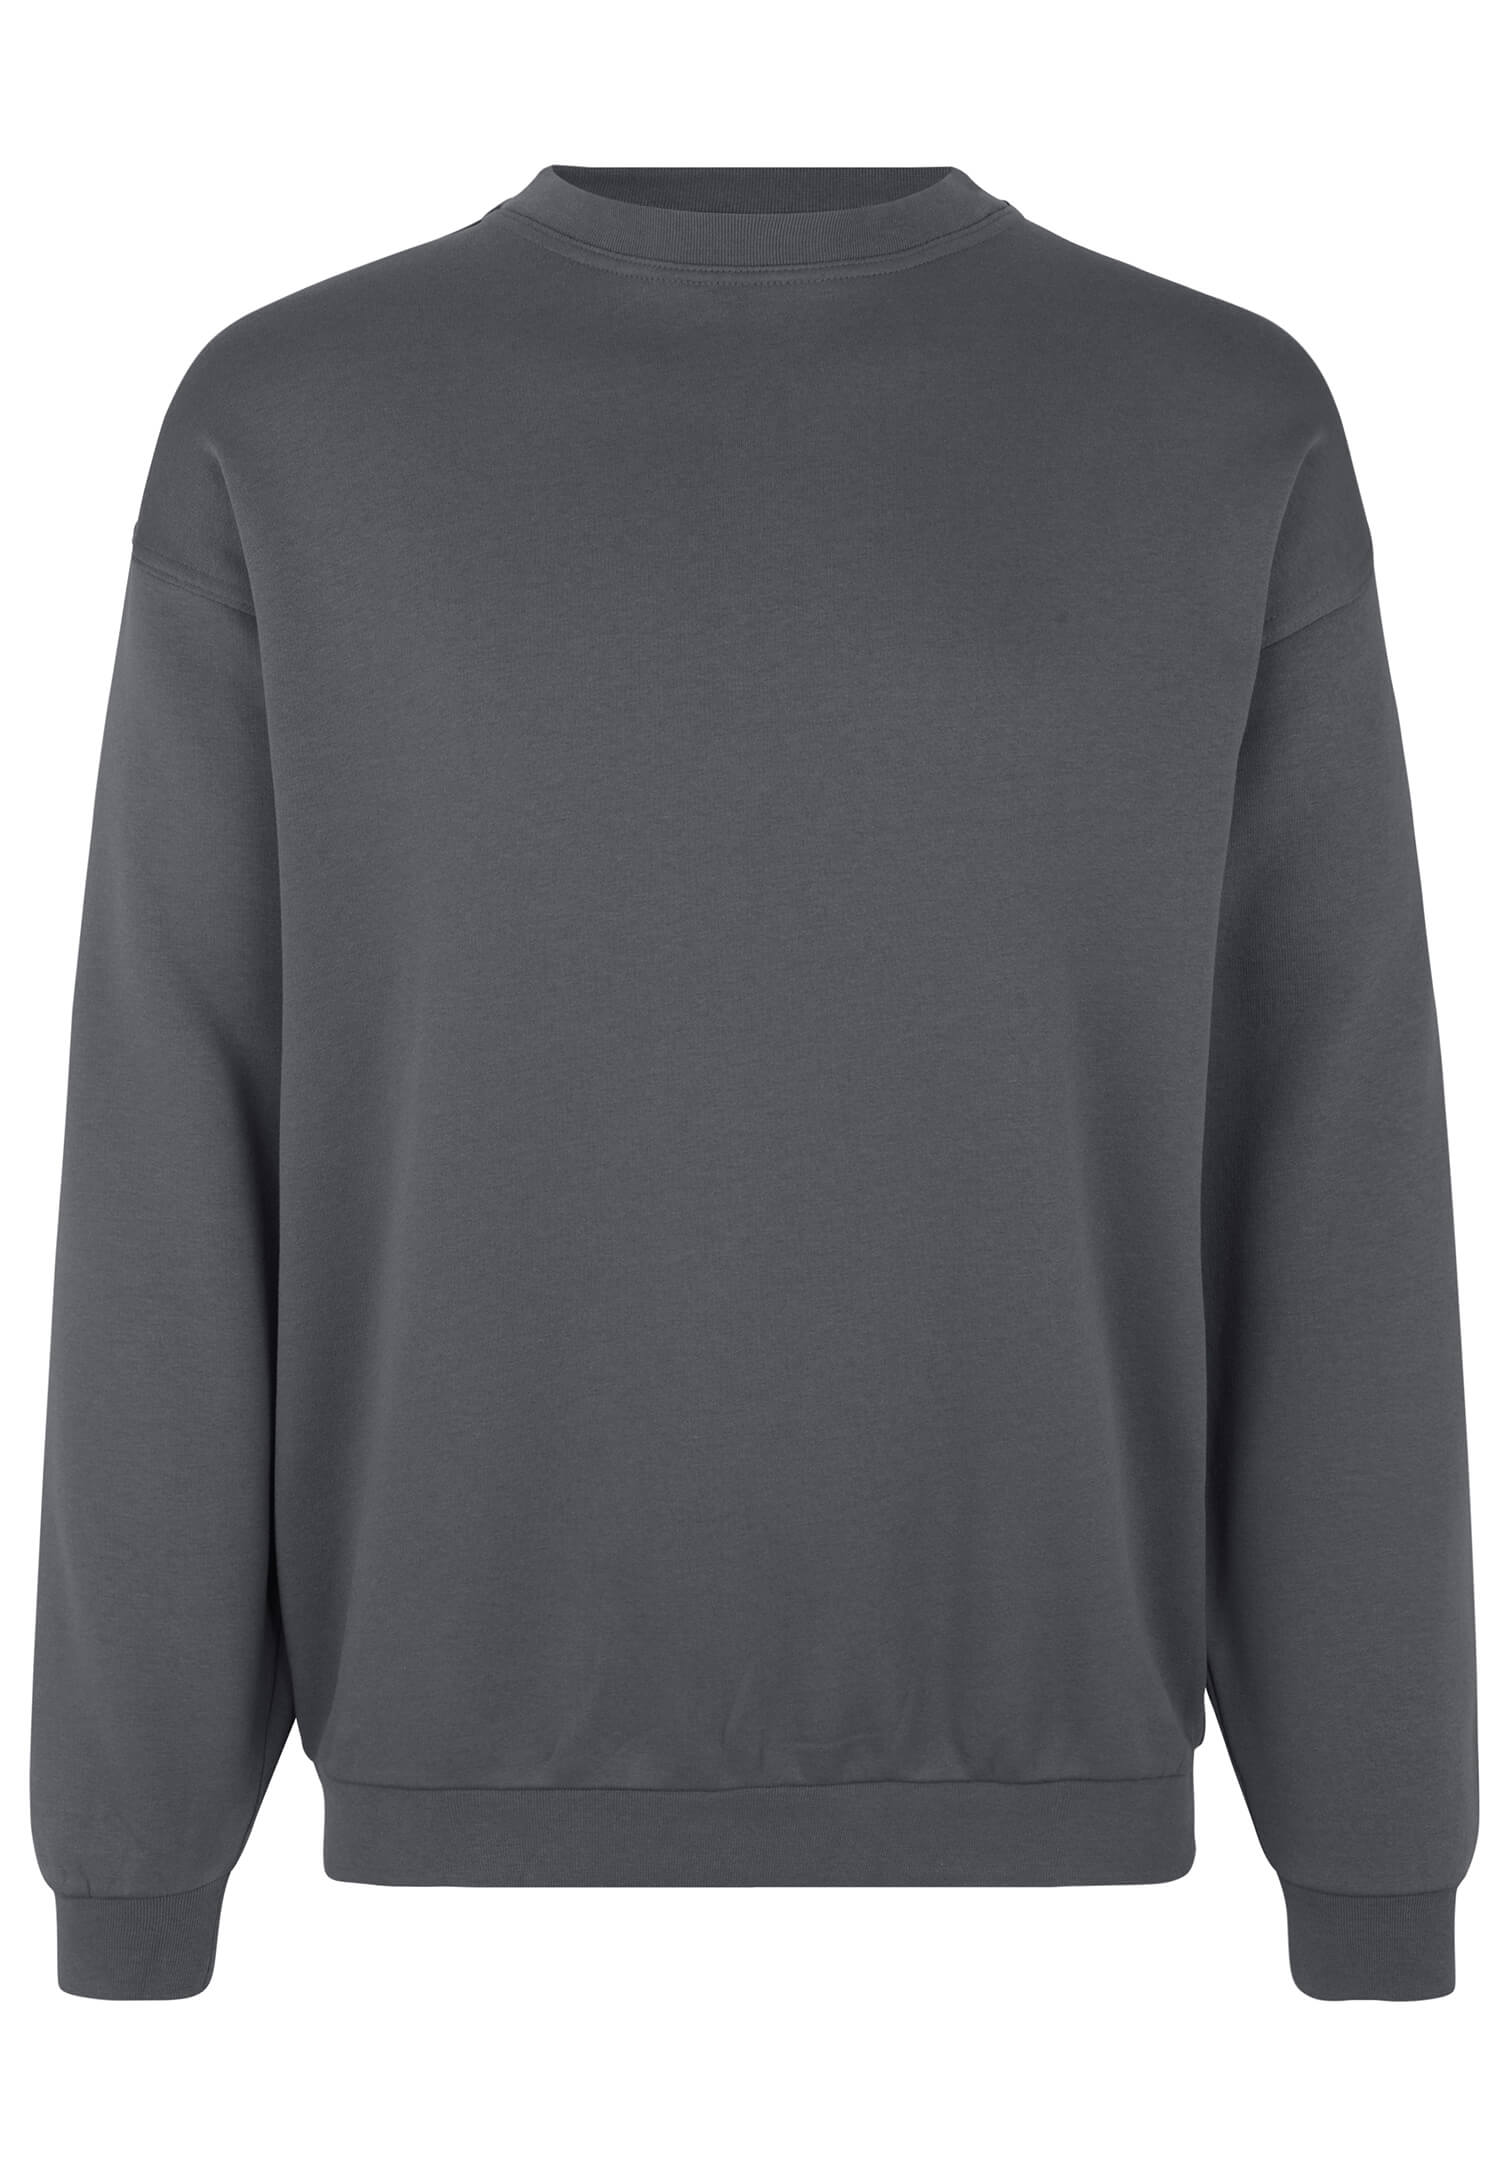 Bestatter-Sweatshirt - grau - 5XL